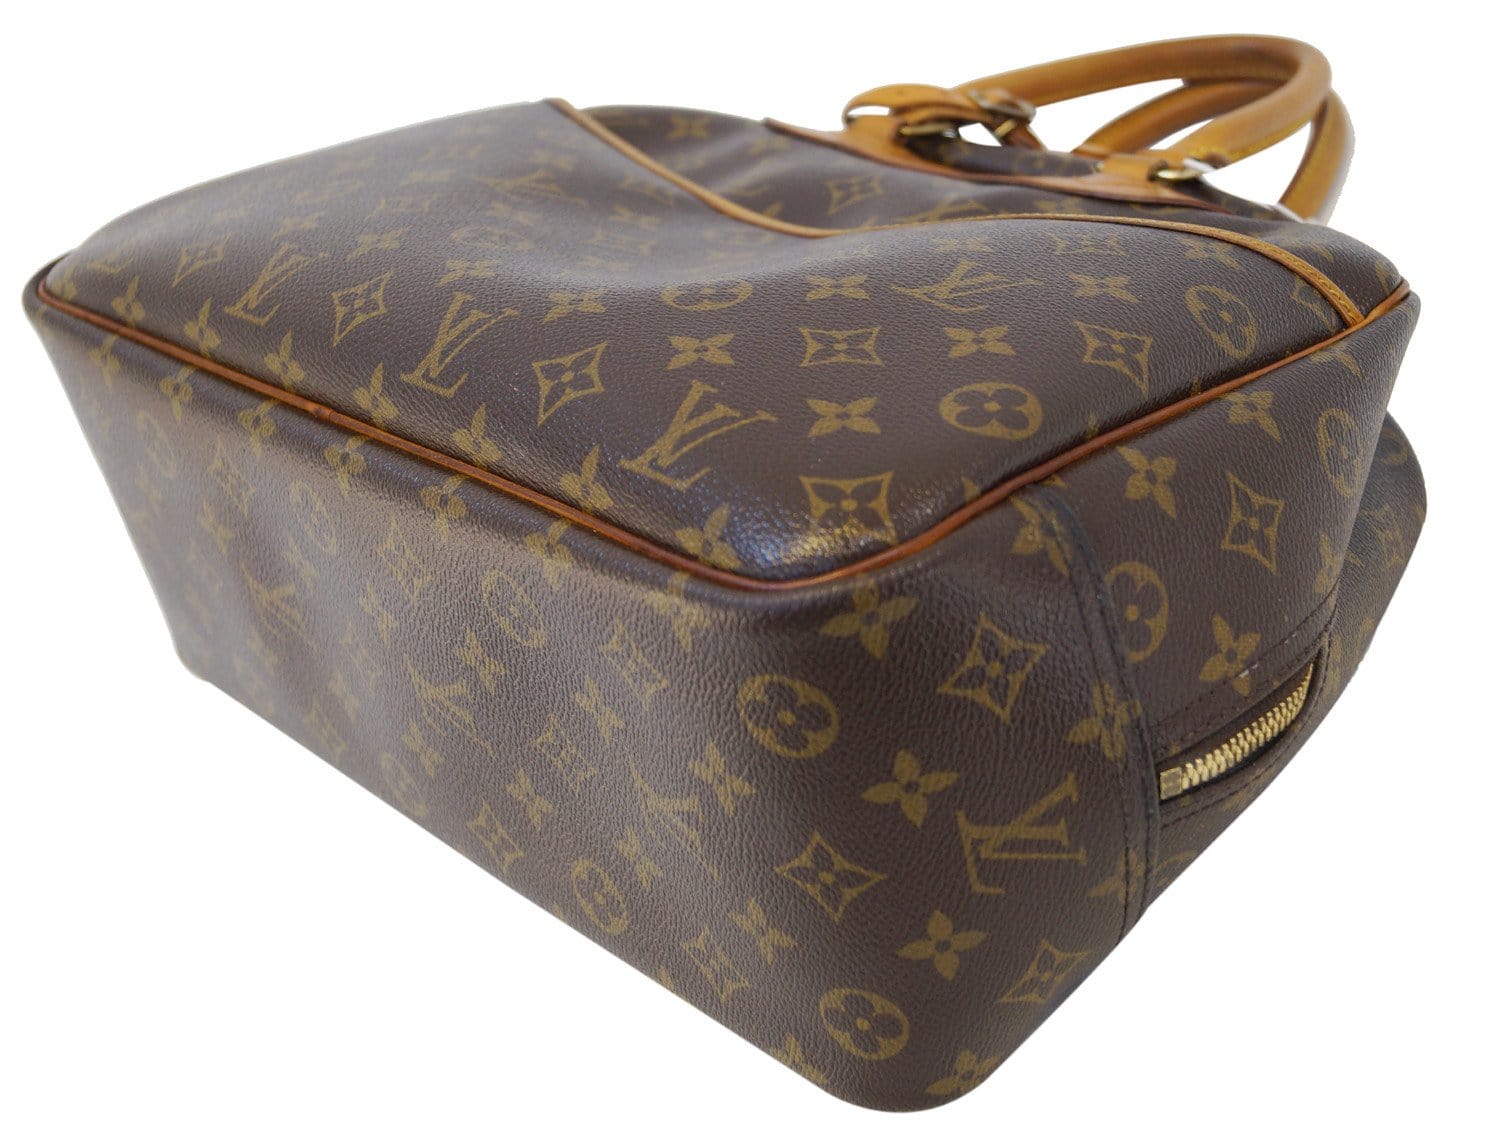 Louis Vuitton Deauville Bag – Timeless Vintage Company